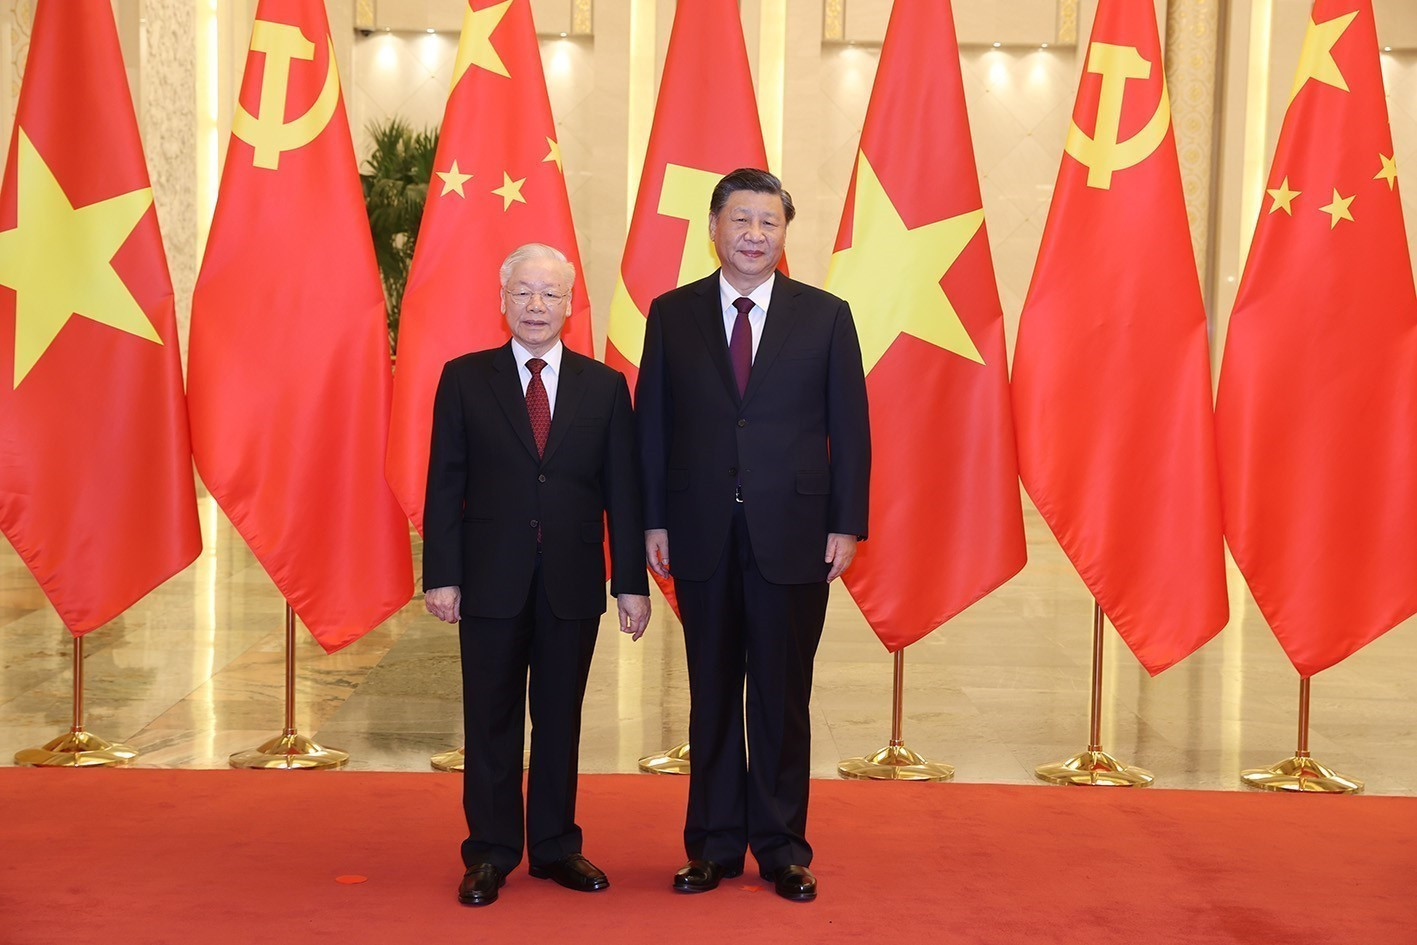 Giới chuyên gia đánh giá cao chuyến thăm Trung Quốc của Tổng bí thư Nguyễn Phú Trọng